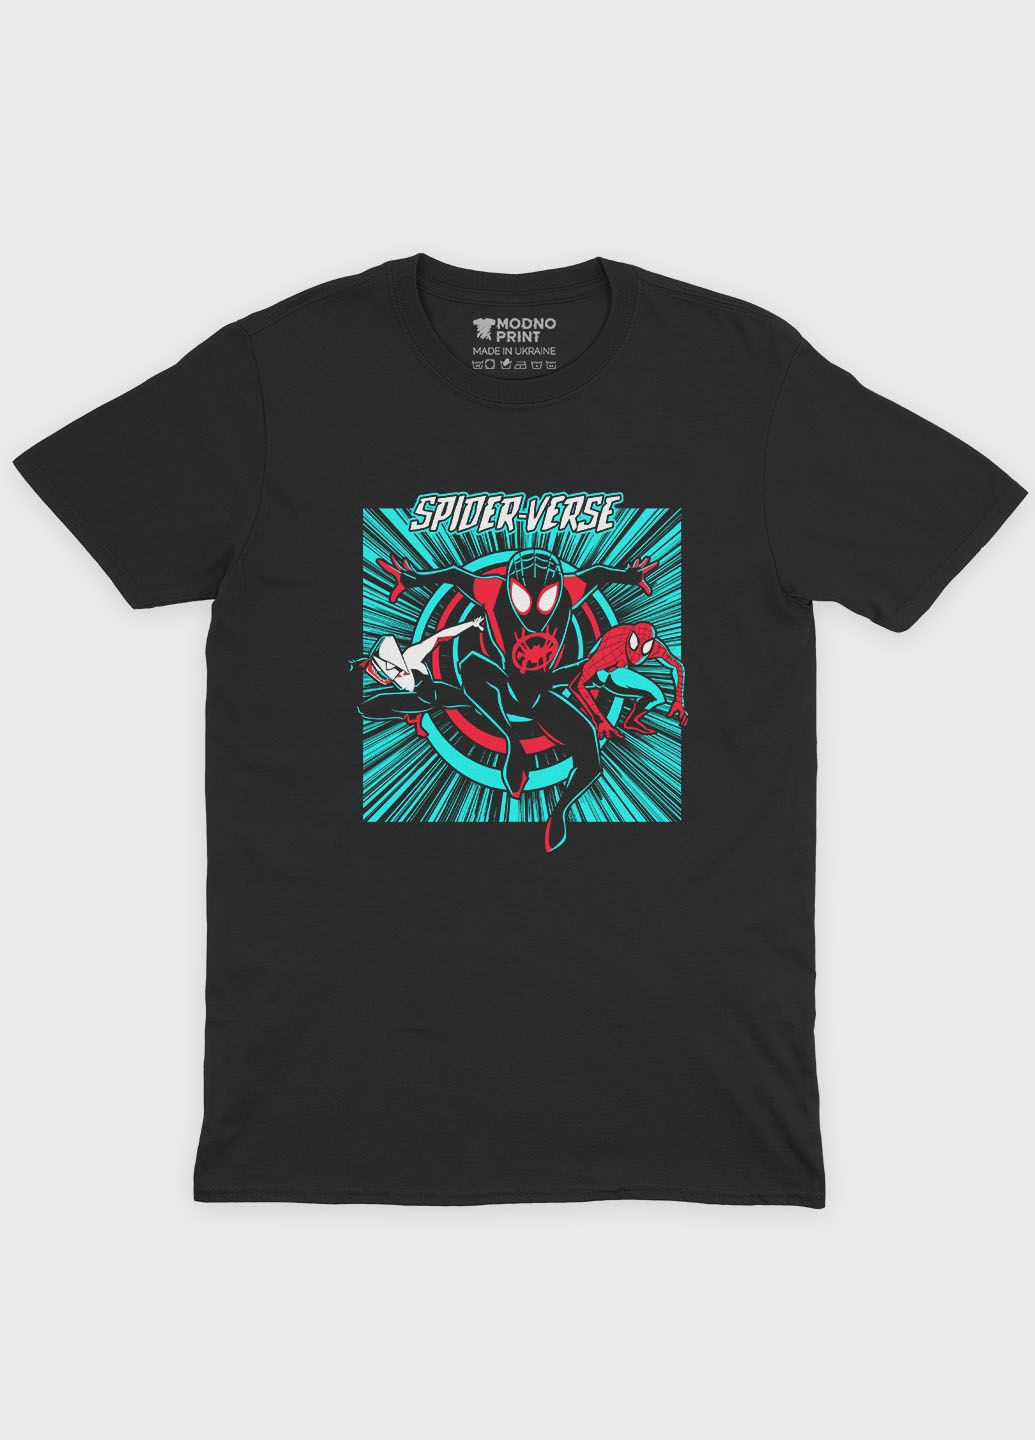 Черная демисезонная футболка для девочки с принтом супергероя - человек-паук (ts001-1-gl-006-014-055-g) Modno